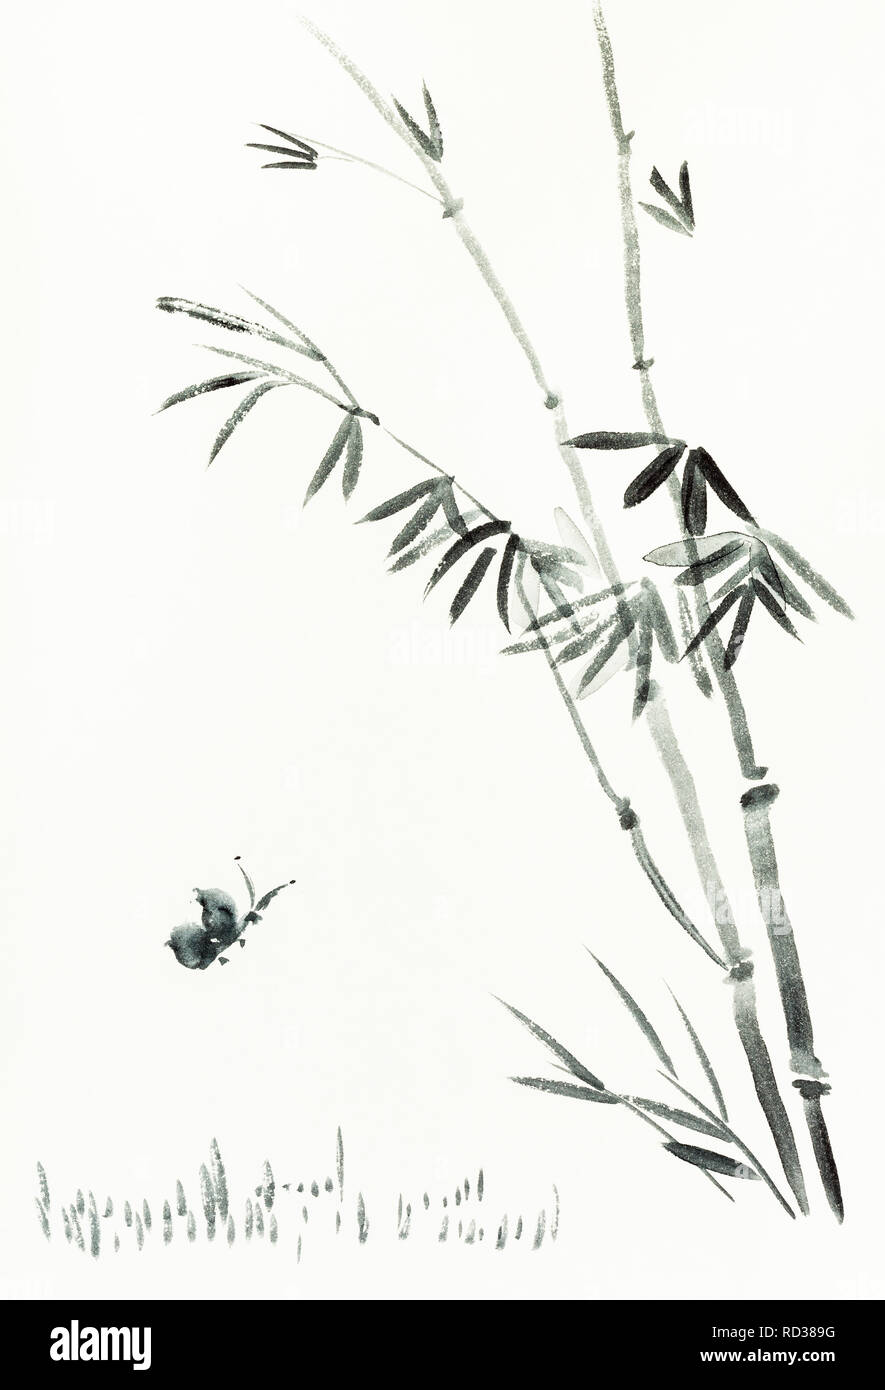 La formation en dessin sumi-e (suibokuga) with style - papillon près de bamboo bush est dessiné à la main sur papier crème Banque D'Images